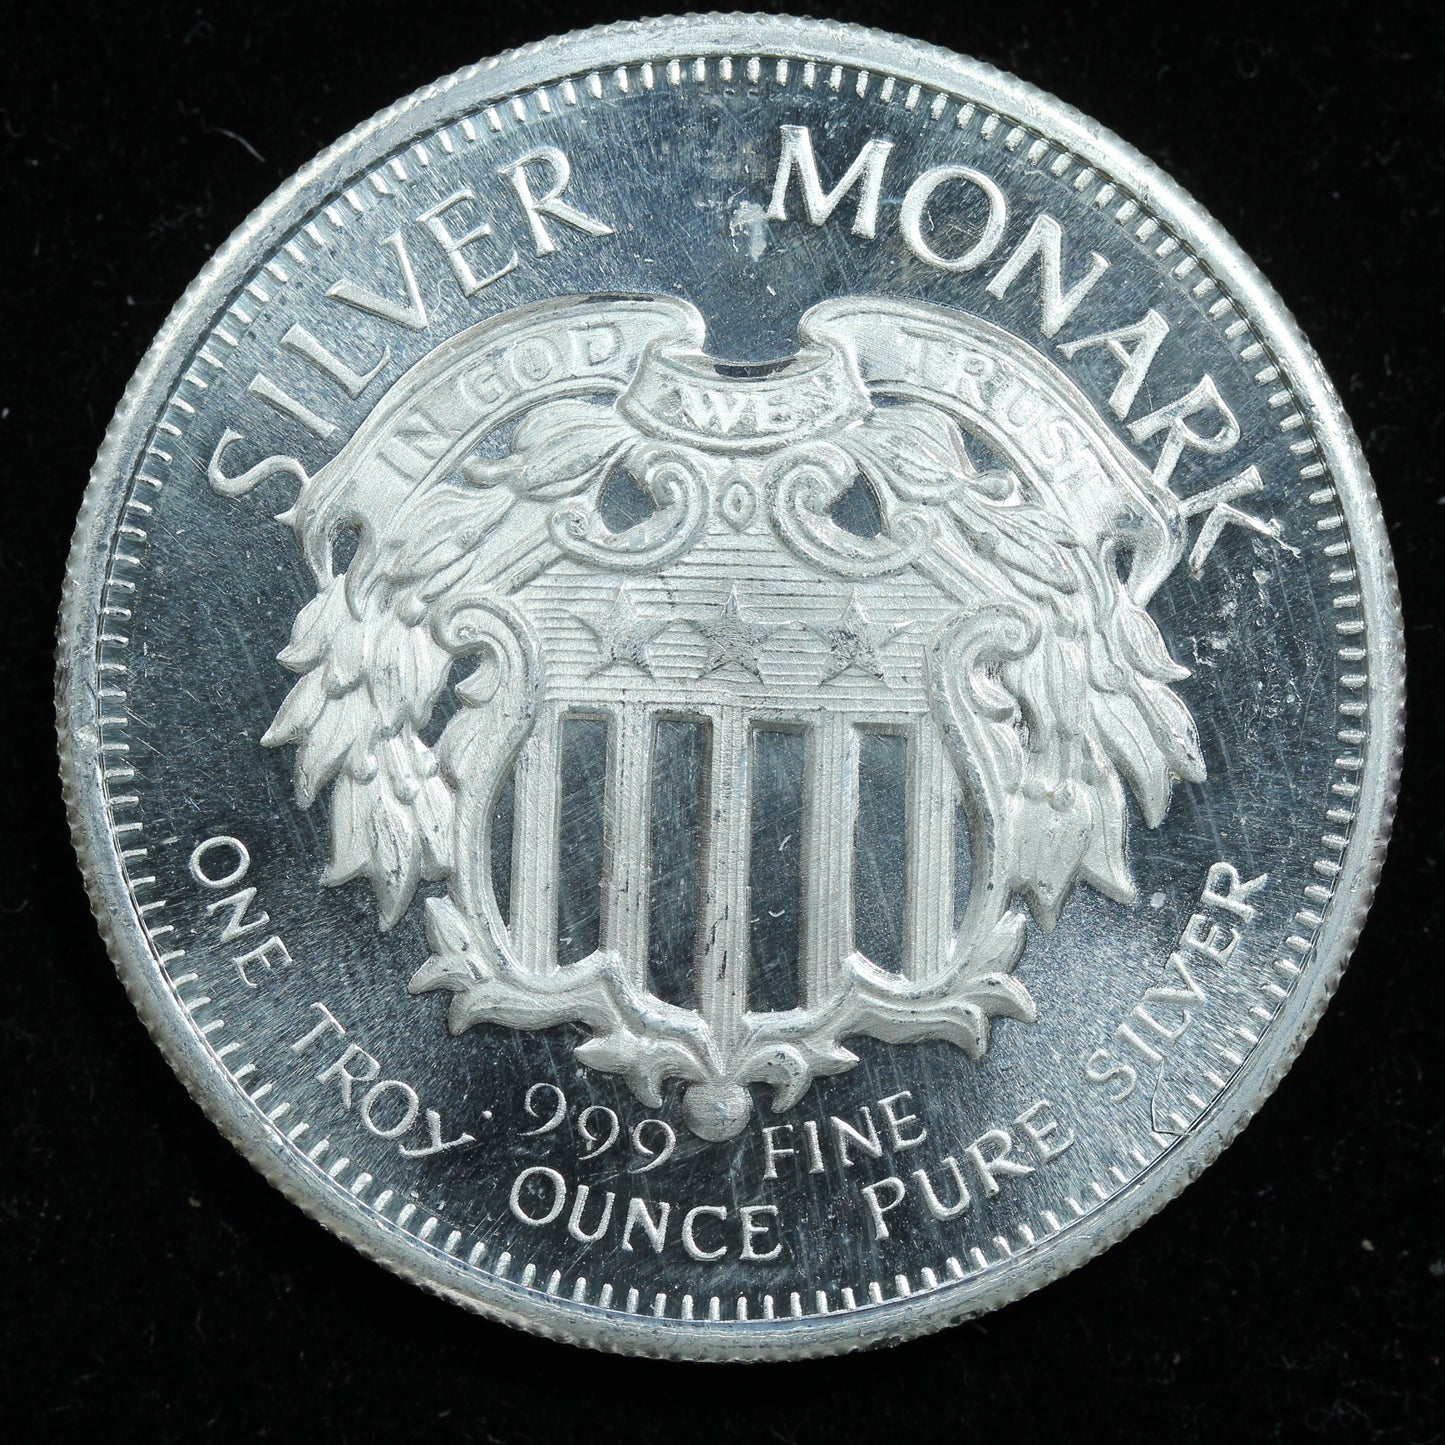 1 oz .999 Fine Silver Round - One Silver Monark w/ Capsule